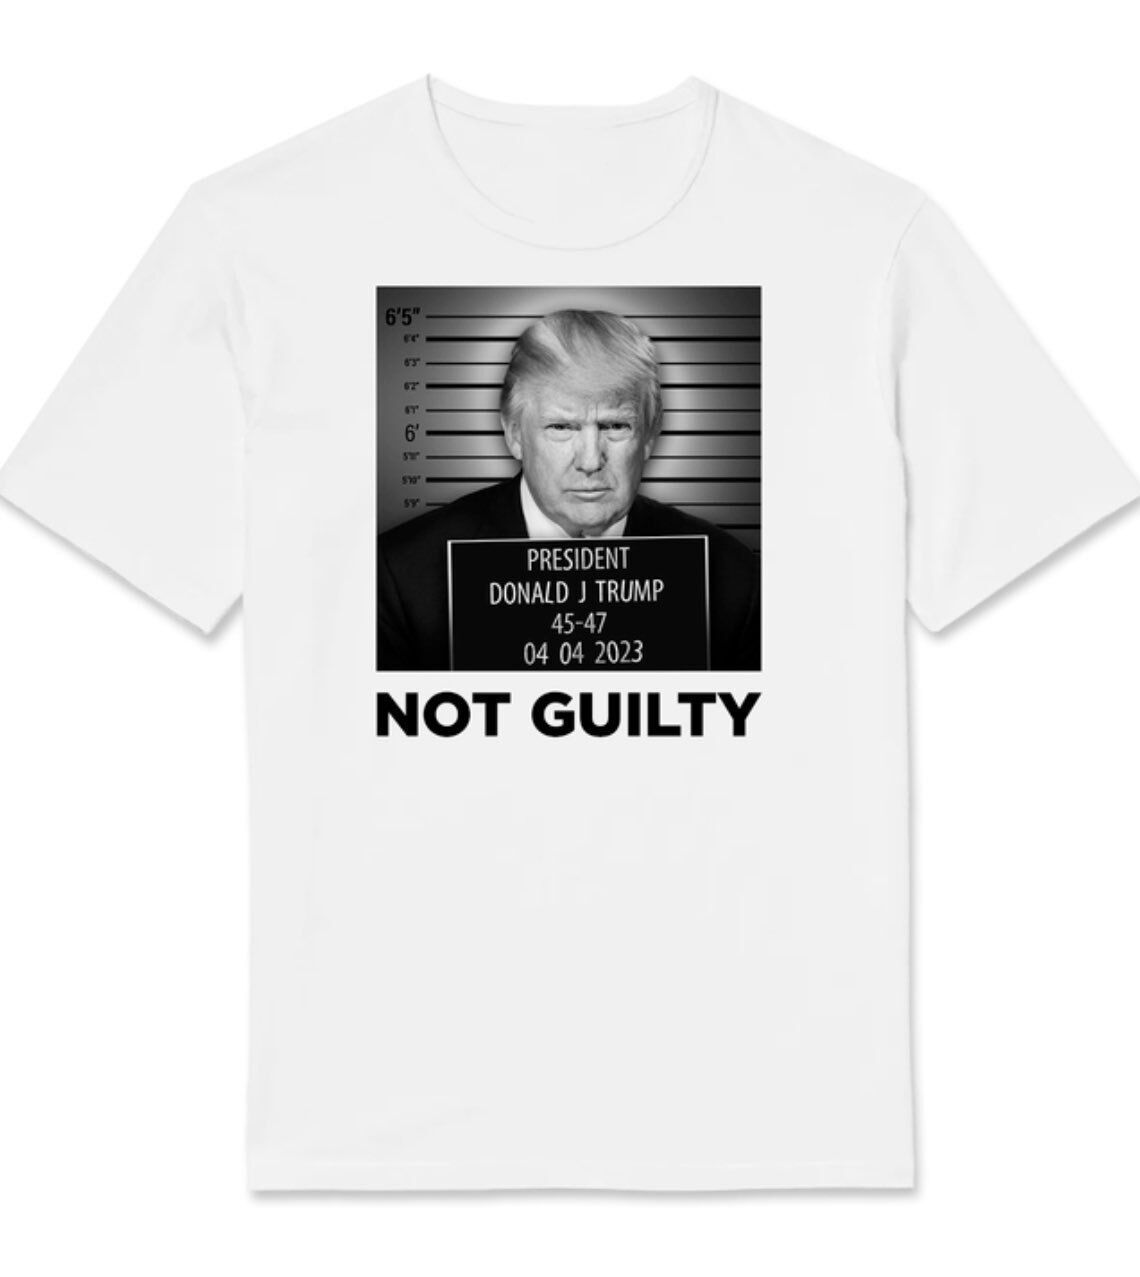 Штаб Трампа продает футболки с "преступным" изображением экс-президента, чтобы собрать ему на избирательную кампанию